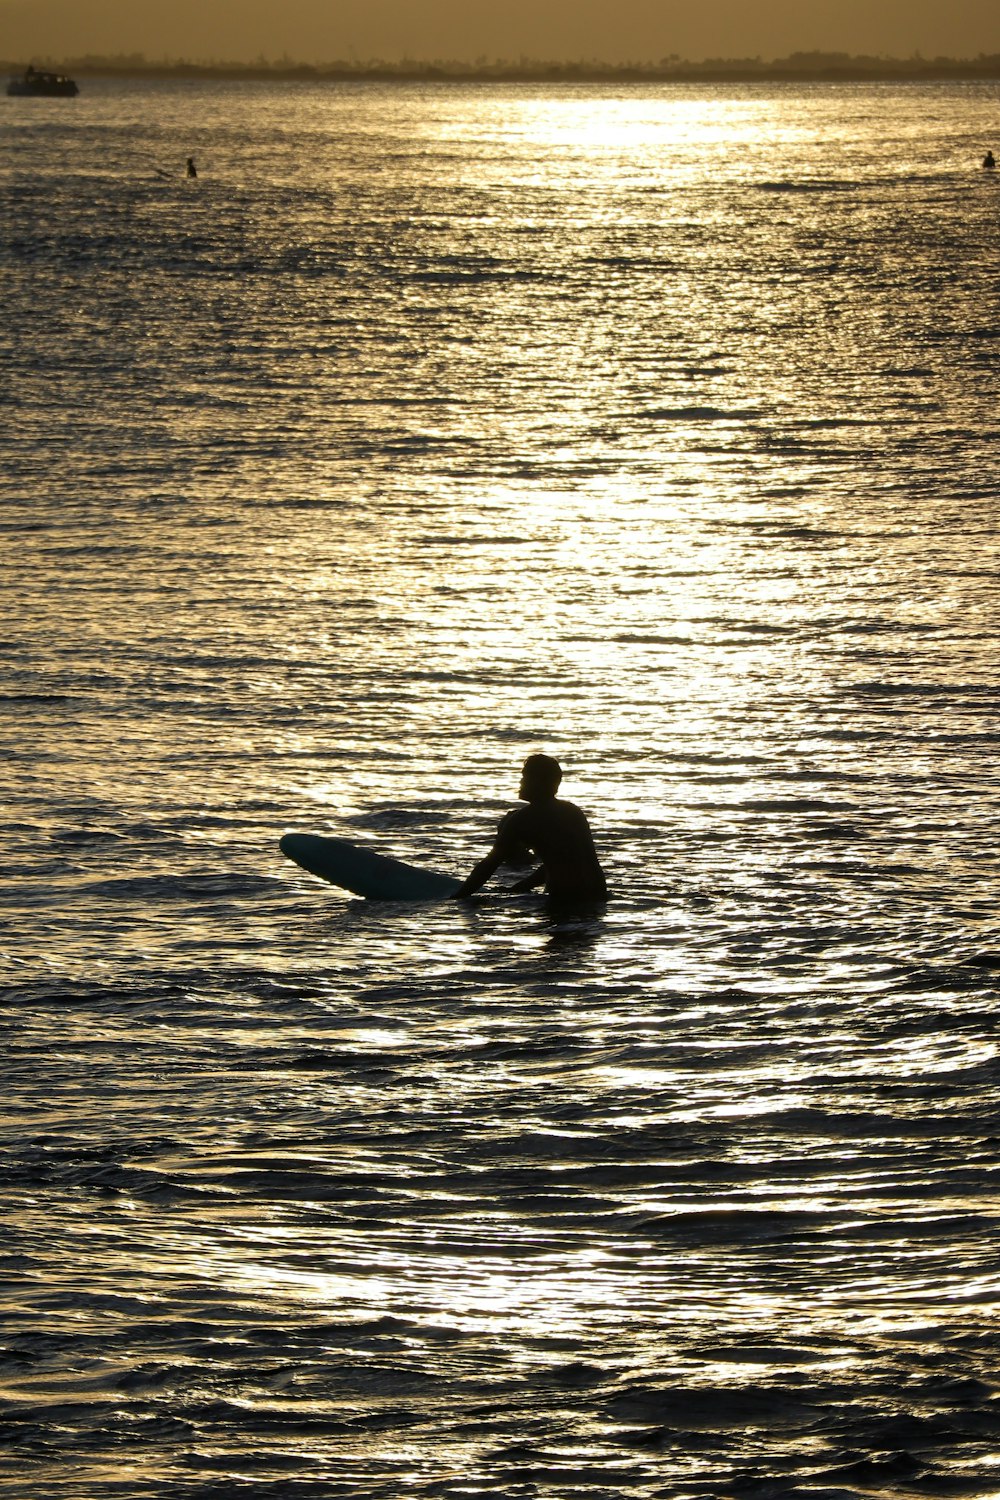 man in black wet suit riding on kayak on sea during daytime